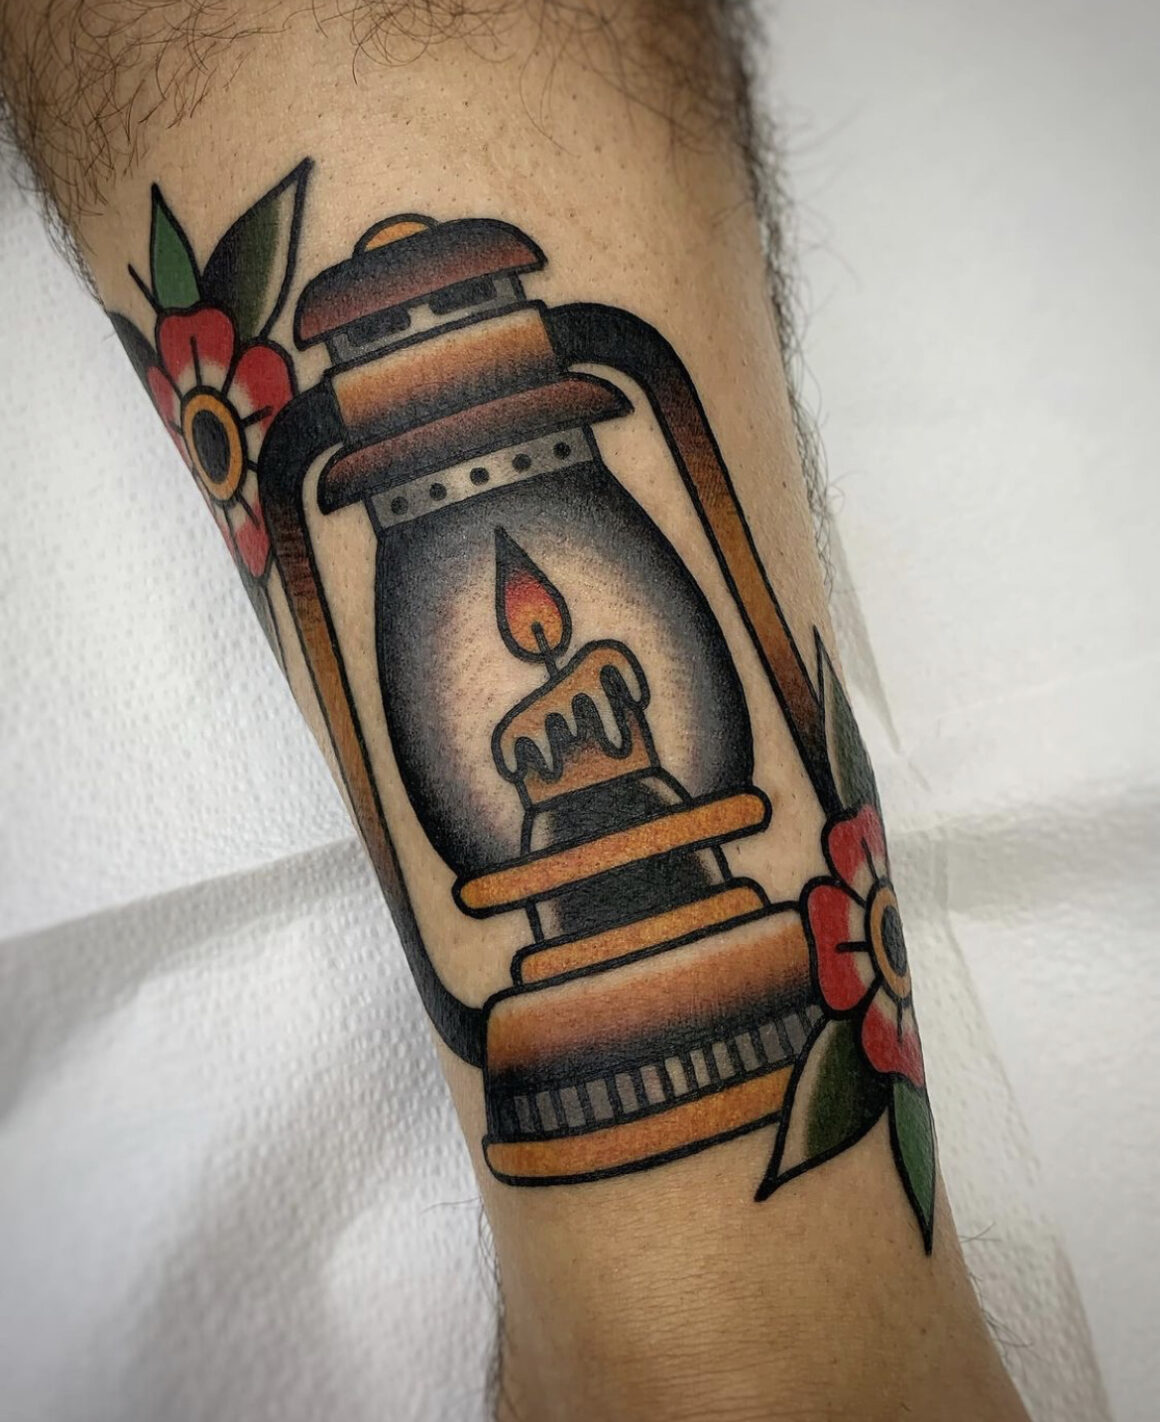 Tattoo Designs Lantern by AMRiver on DeviantArt